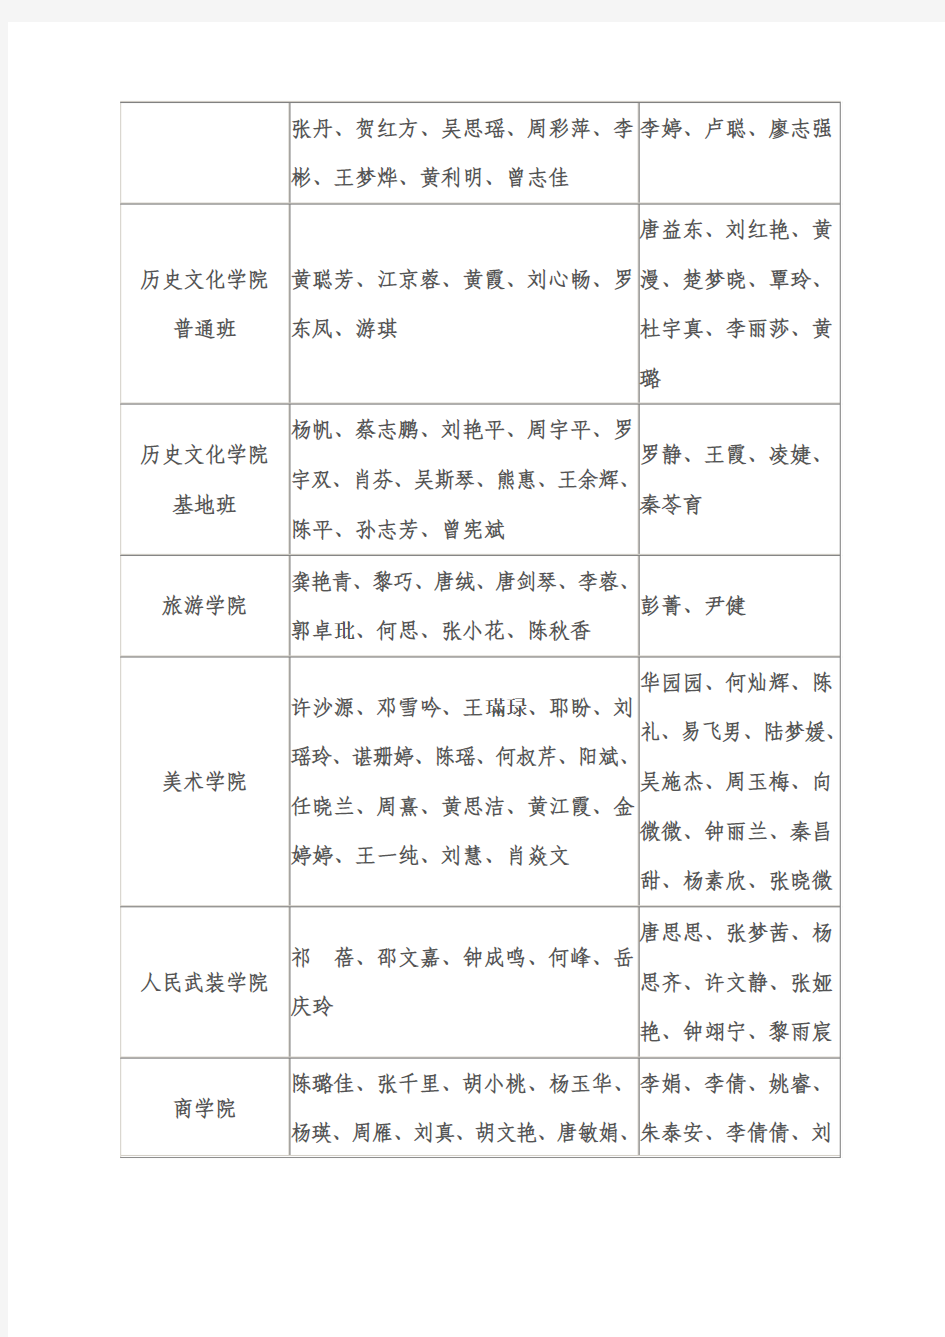 湖南师范大学2013年推荐优秀本科毕业生免试攻读研究生名单公示